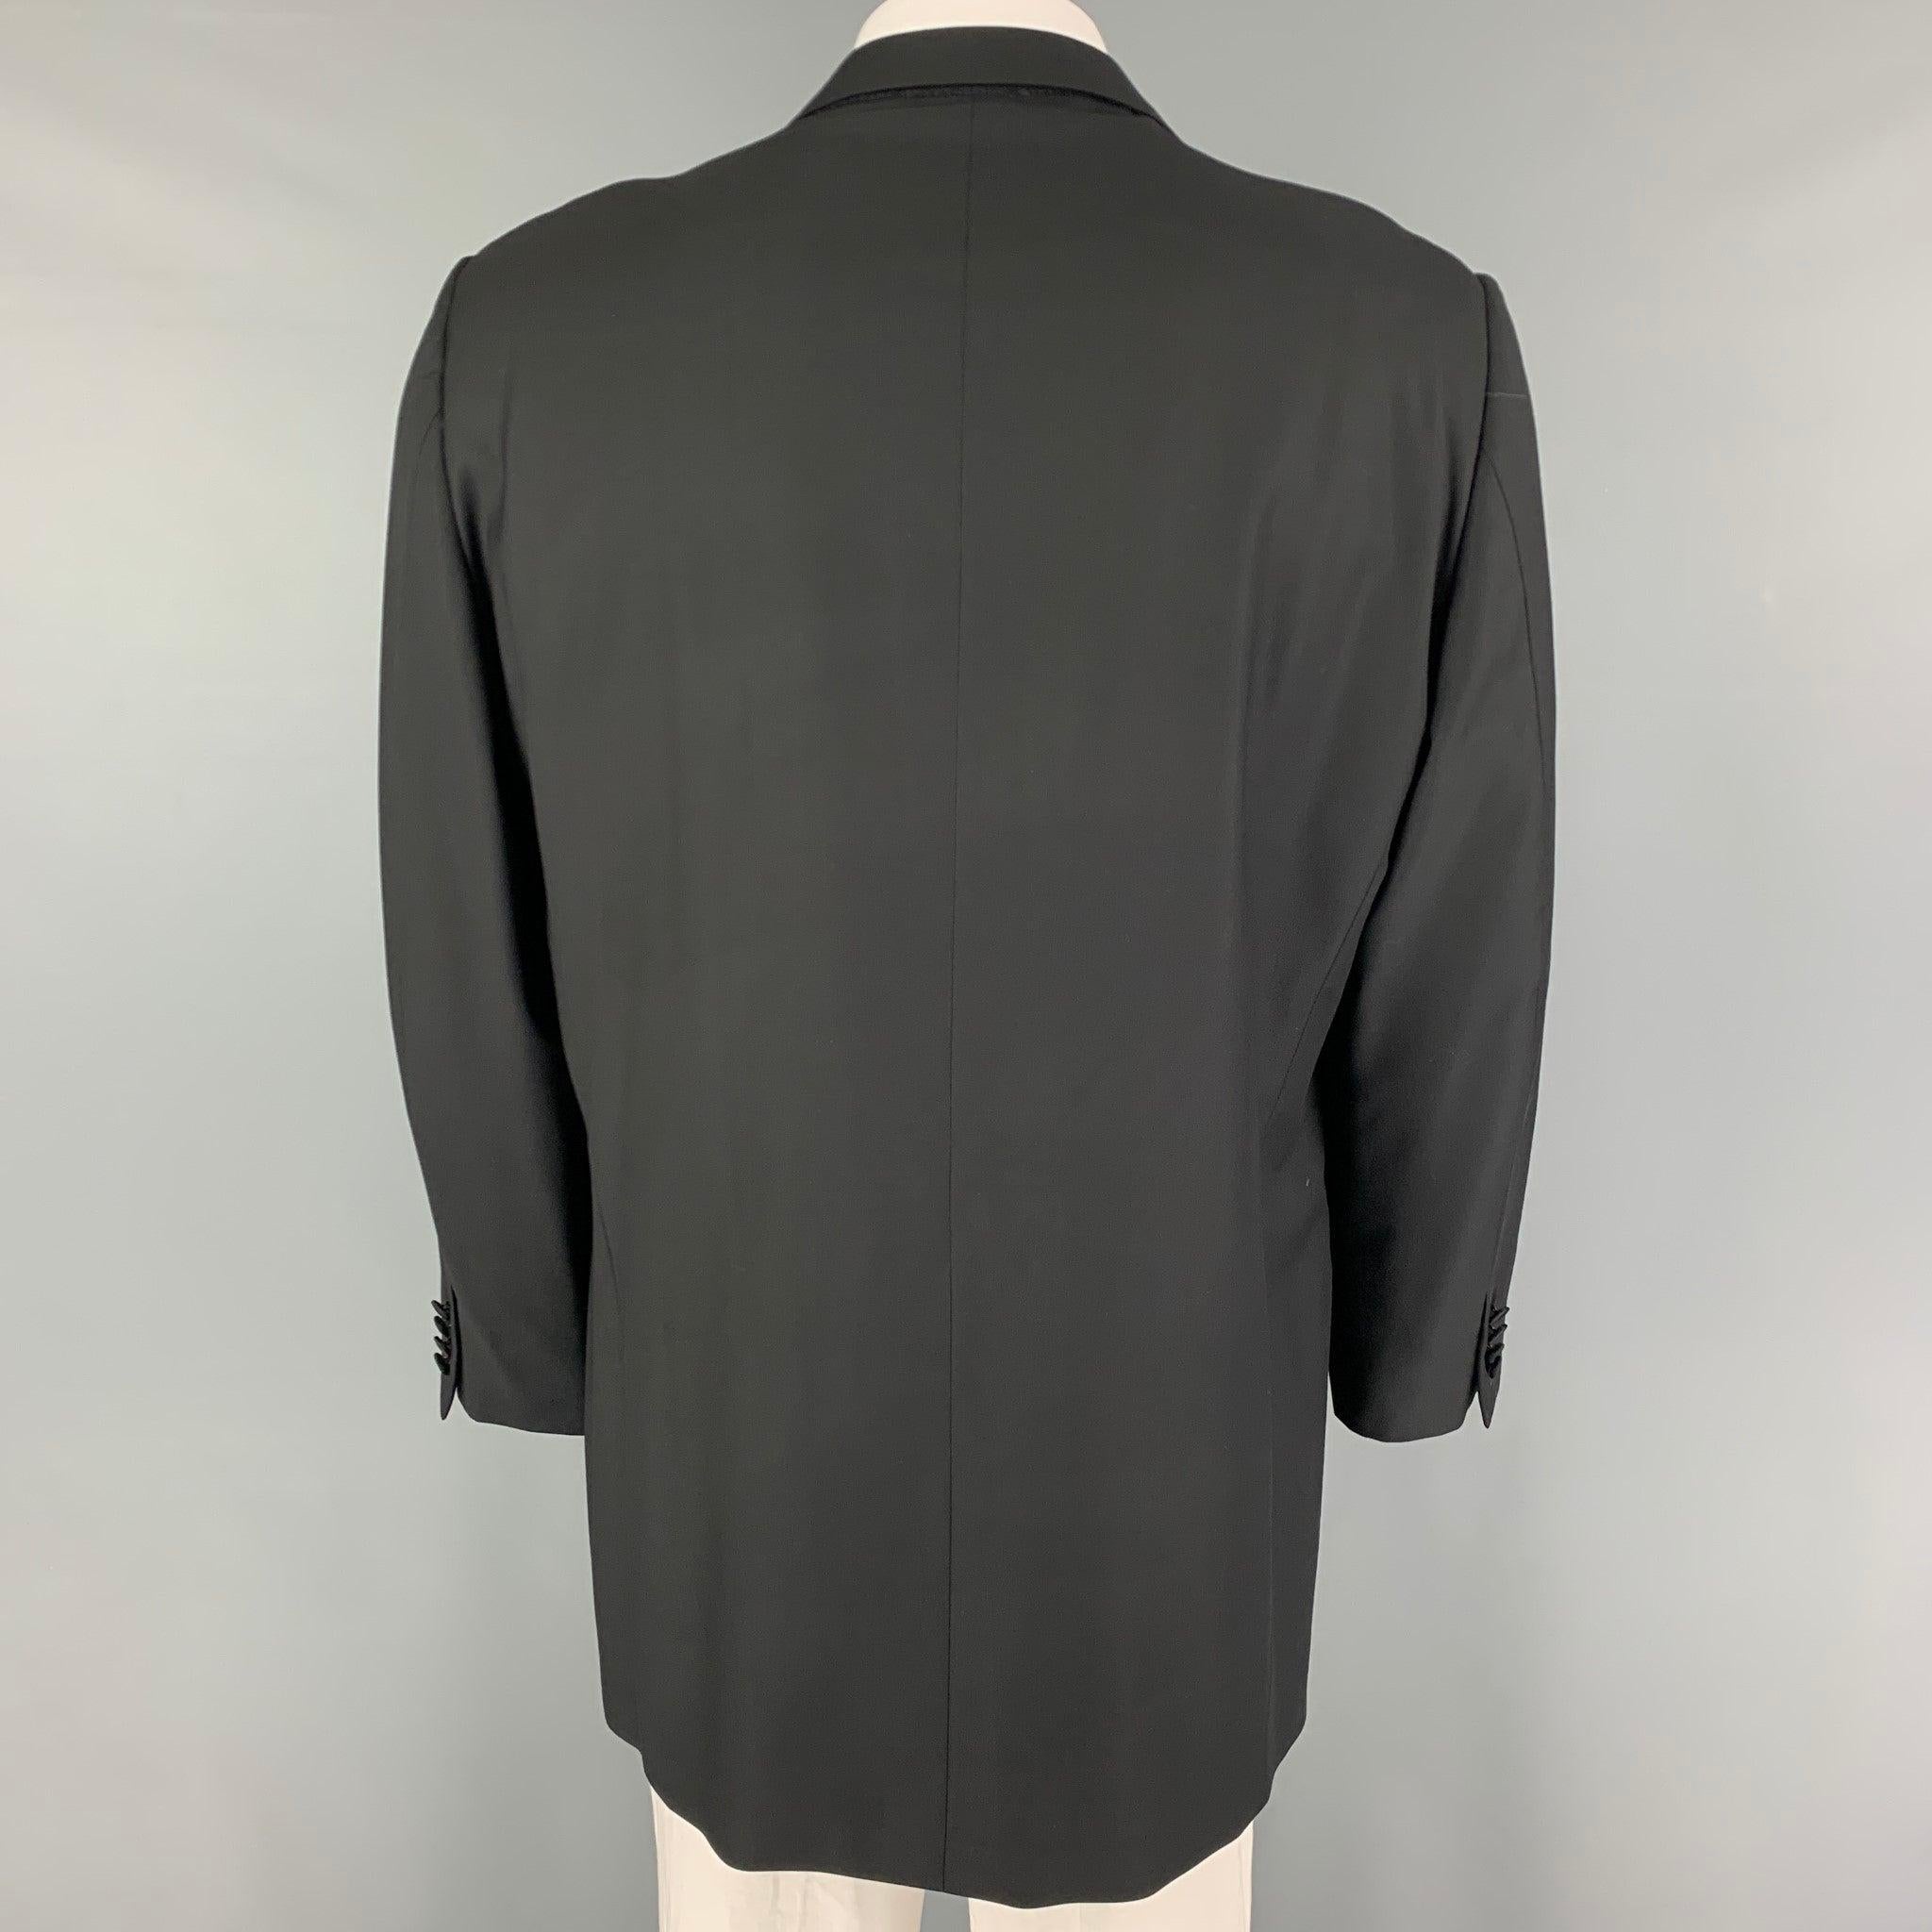 ERMENEGILDO ZEGNA Size 48 Short Black Wool Tuxedo Sport Coat In Good Condition For Sale In San Francisco, CA